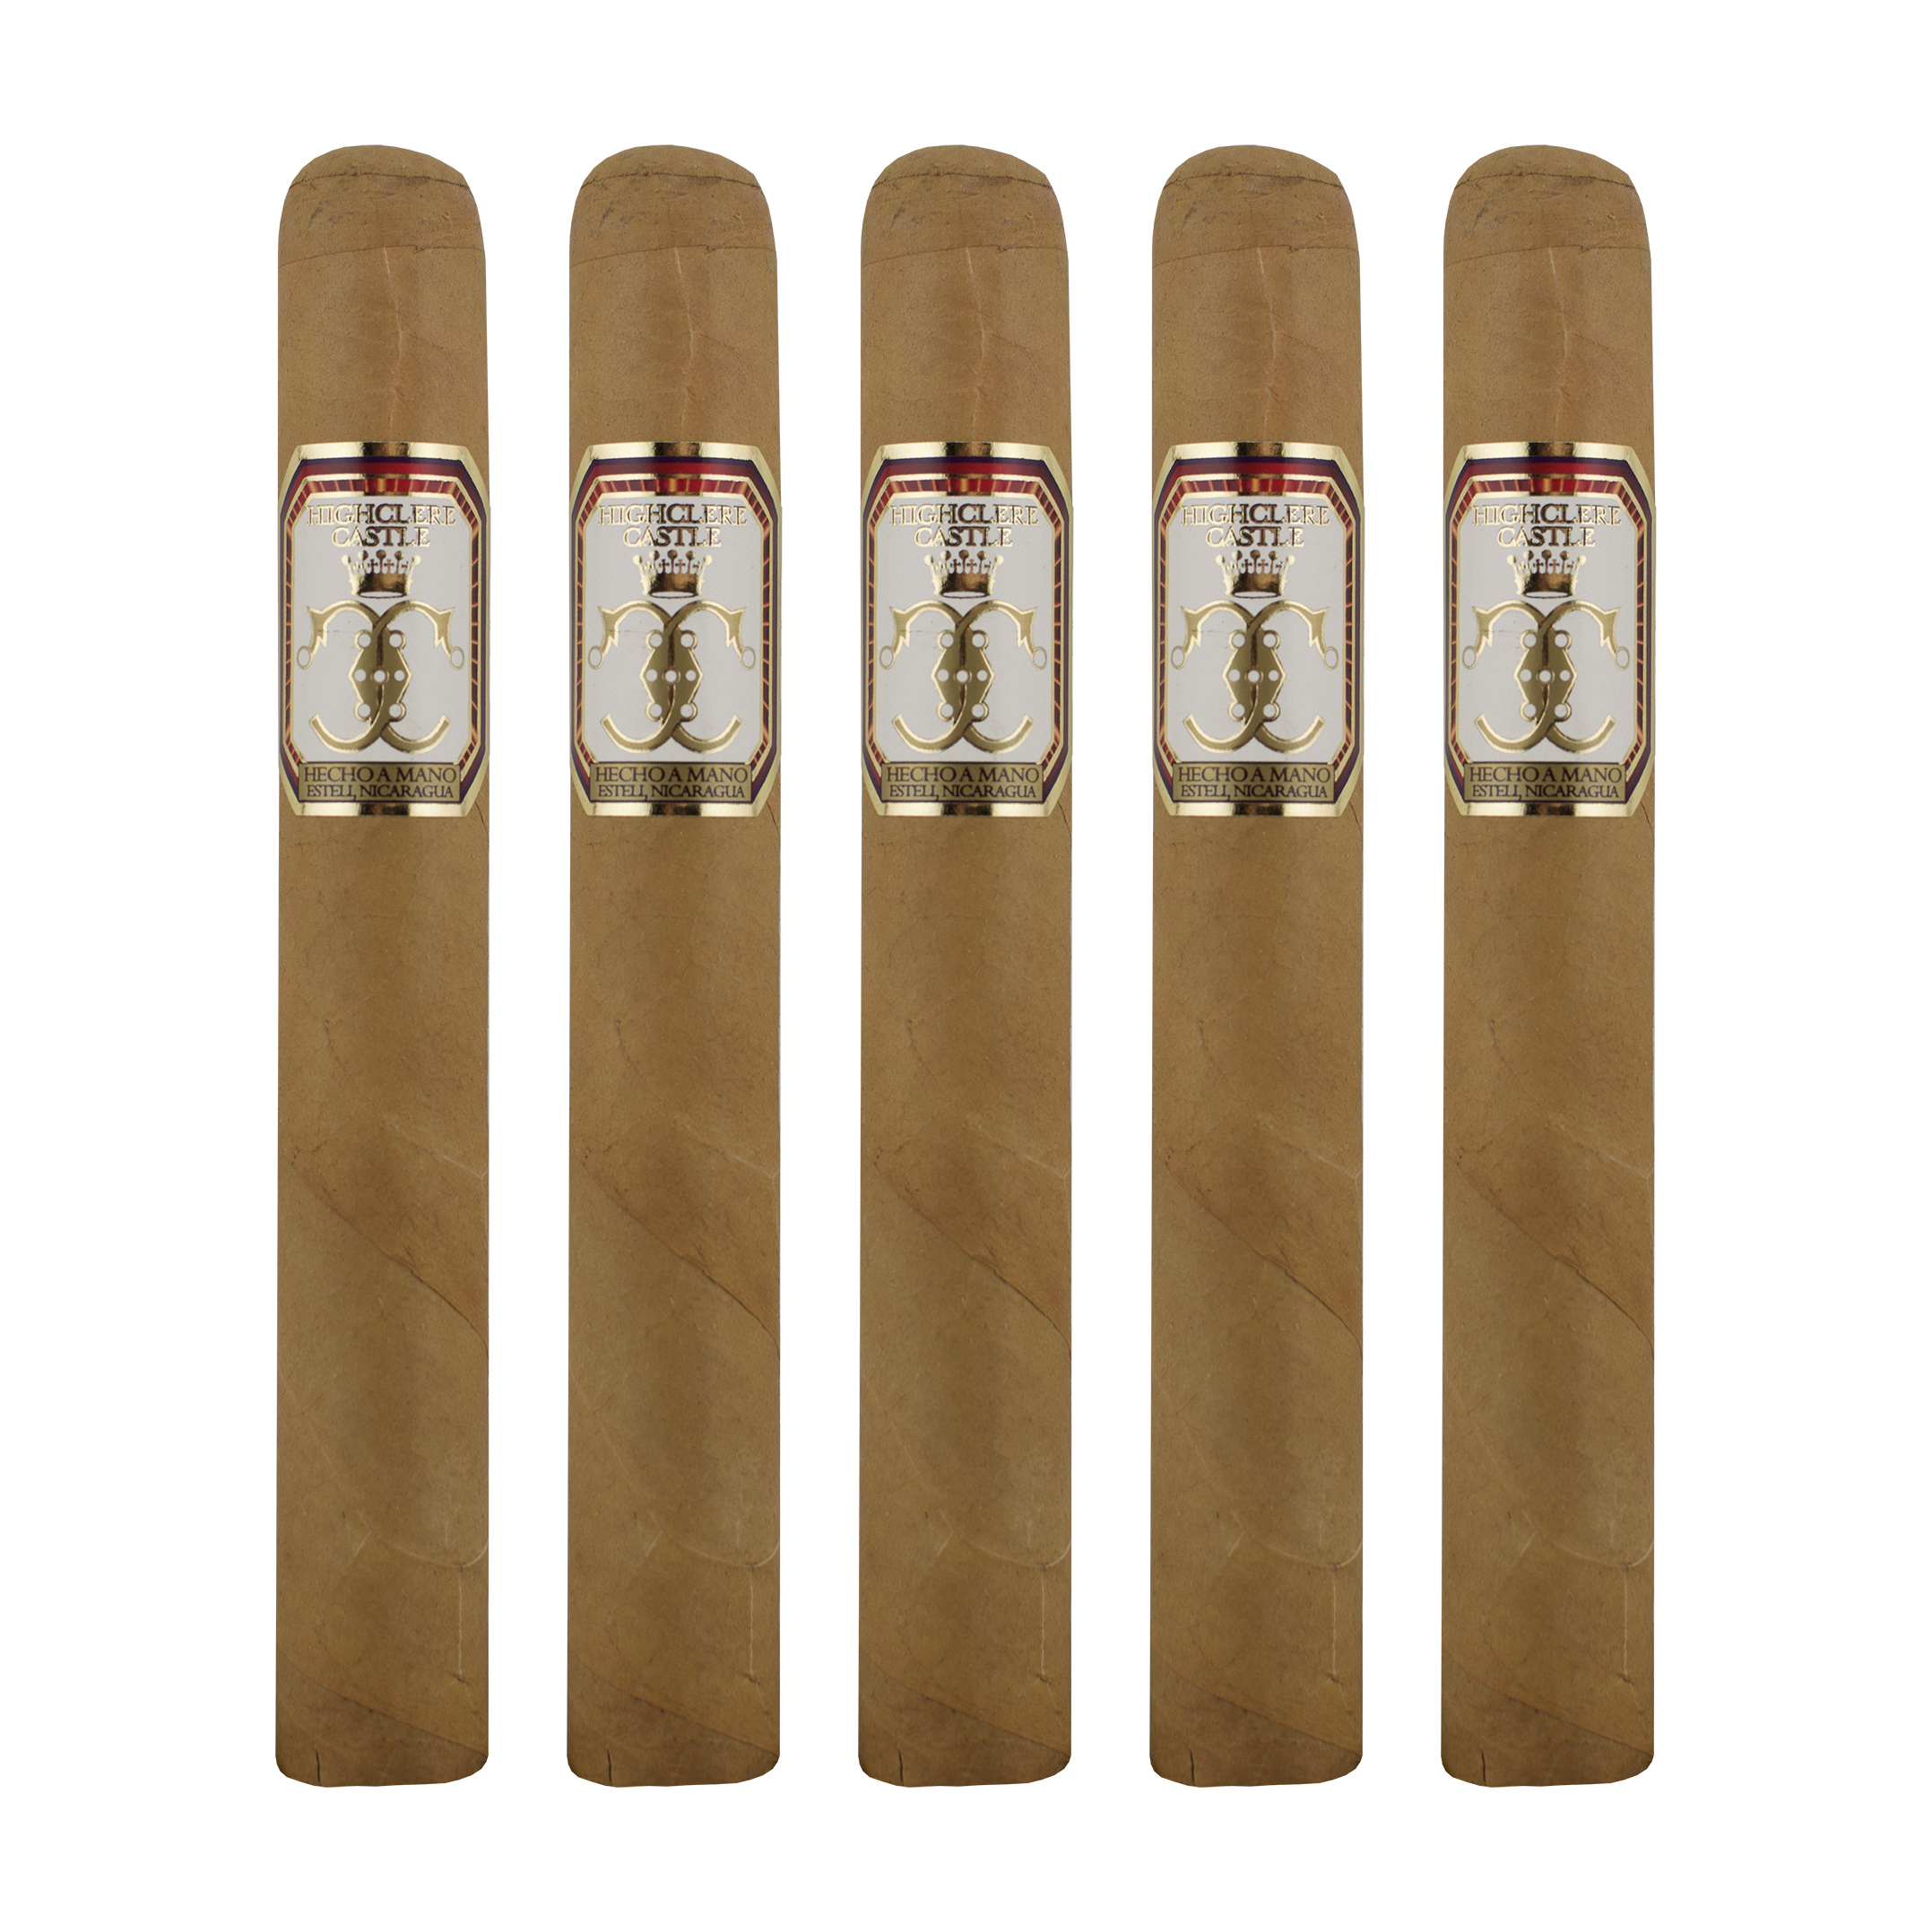 Highclere Castle Toro Cigar - 5 Pack